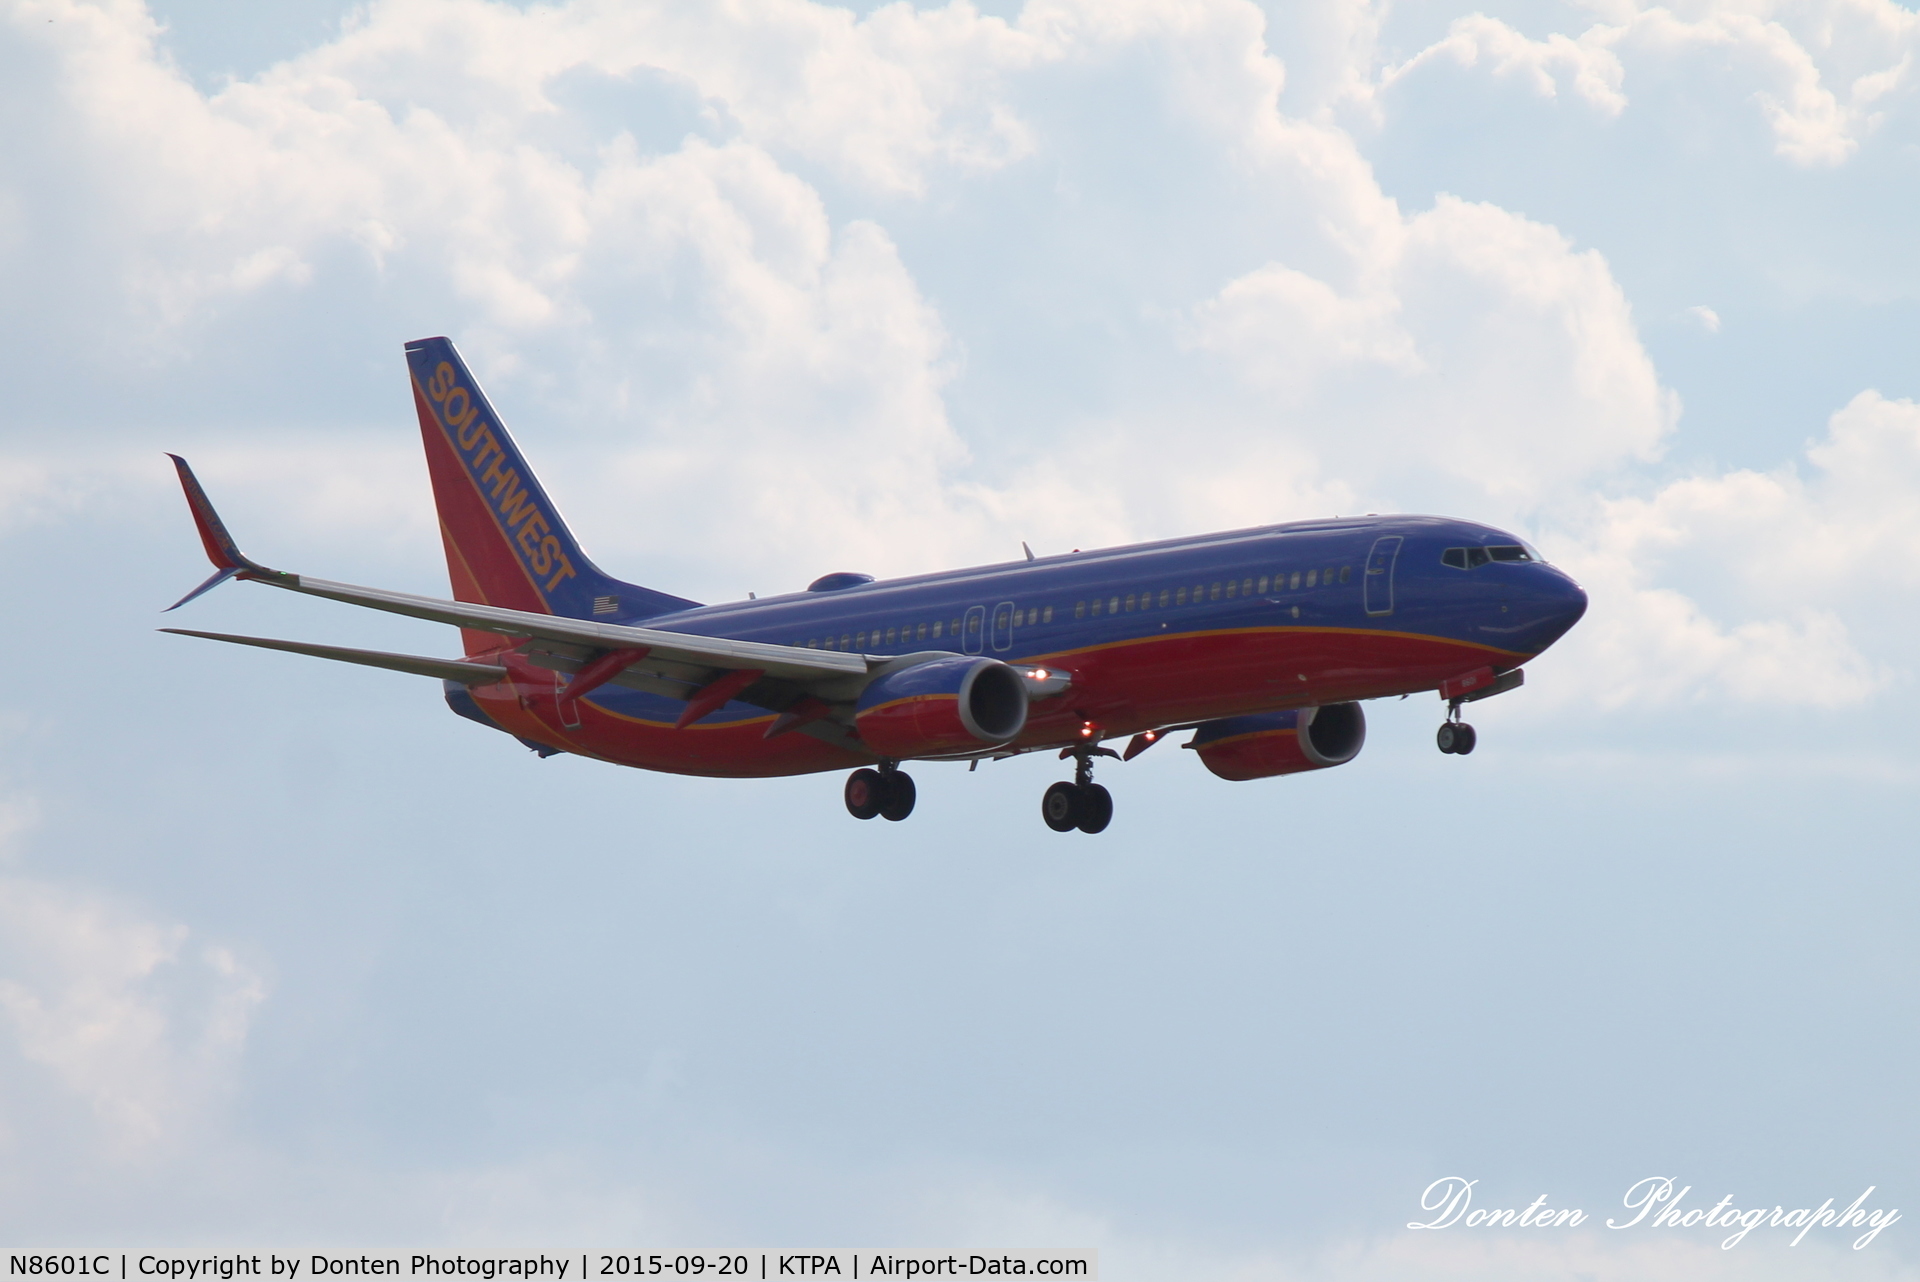 N8601C, 2012 Boeing 737-8H4 C/N 38874, Southwest Flight 532 (N8601C) arrives at Tampa International Airport following flight from Denver International Airport